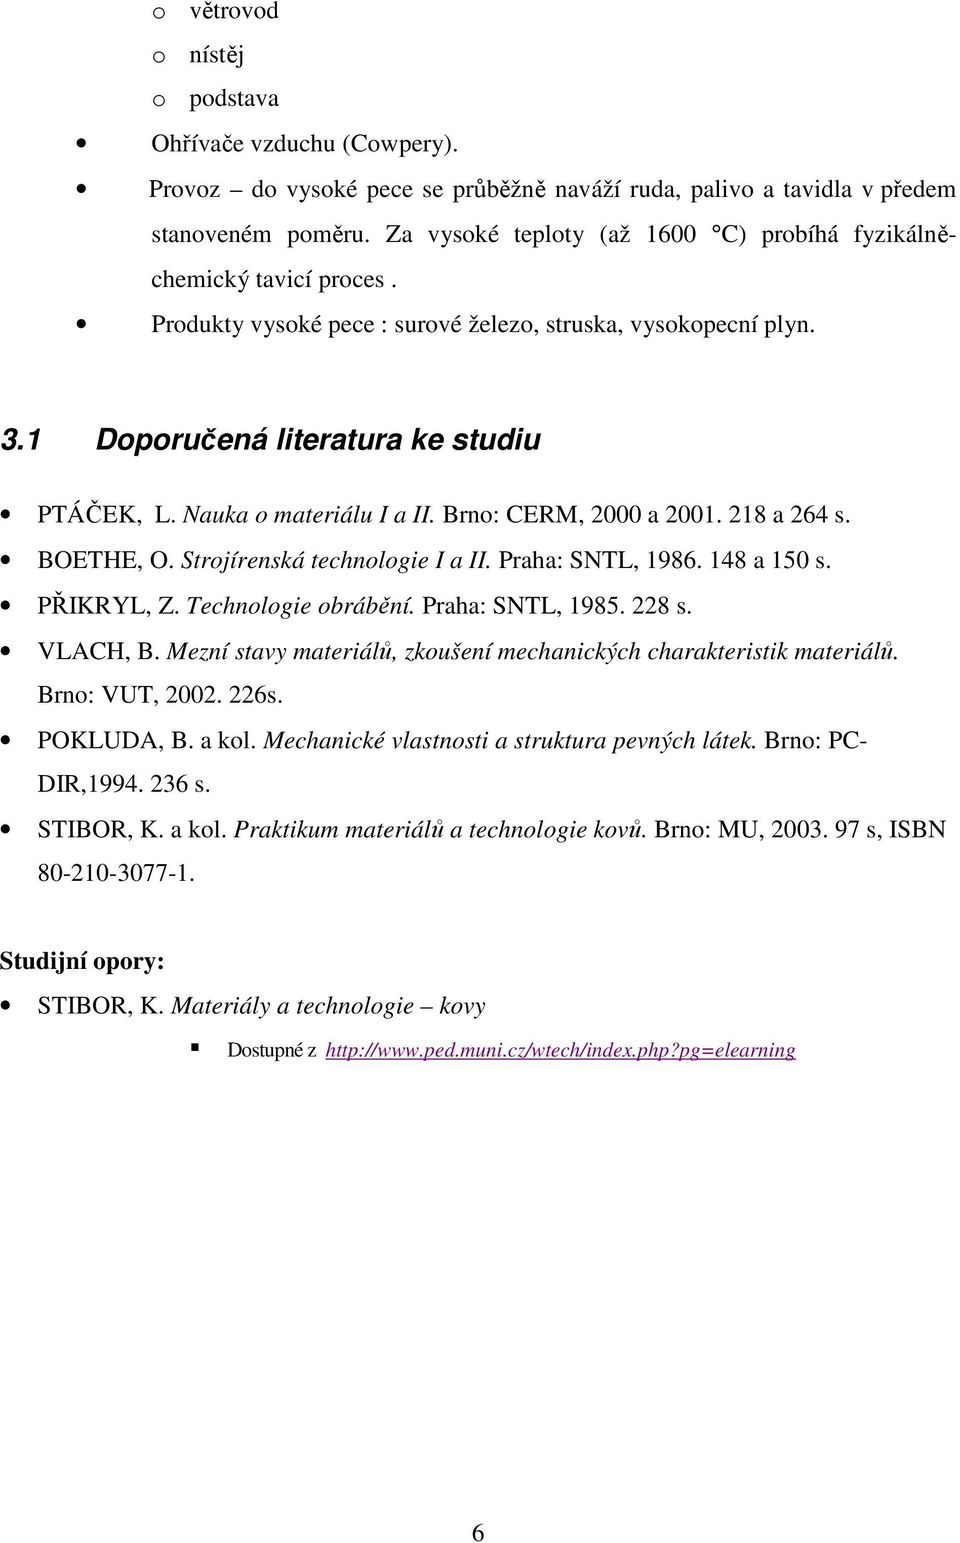 1 Doporučená literatura ke studiu PTÁČEK, L. Nauka o materiálu I a II. Brno: CERM, 2000 a 2001. 218 a 264 s. PŘIKRYL, Z. Technologie obrábění. Praha: SNTL, 1985. 228 s.